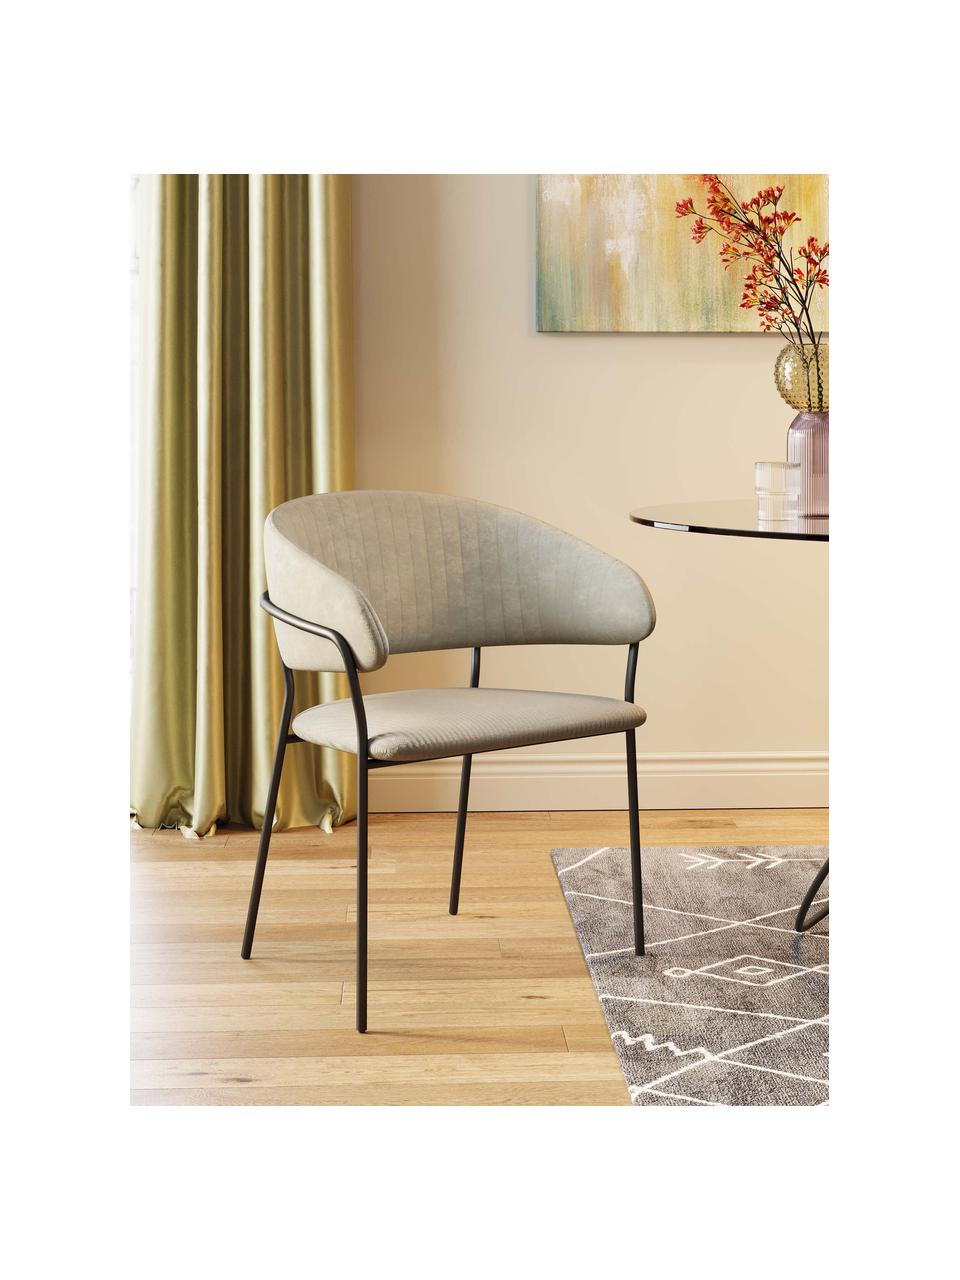 Fluwelen stoelen Belle, 2 stuks, Bekleding: fluweel (100% polyester) , Frame: gepoedercoat staal, Fluweel grijs, zwart, B 57 x H 54 cm